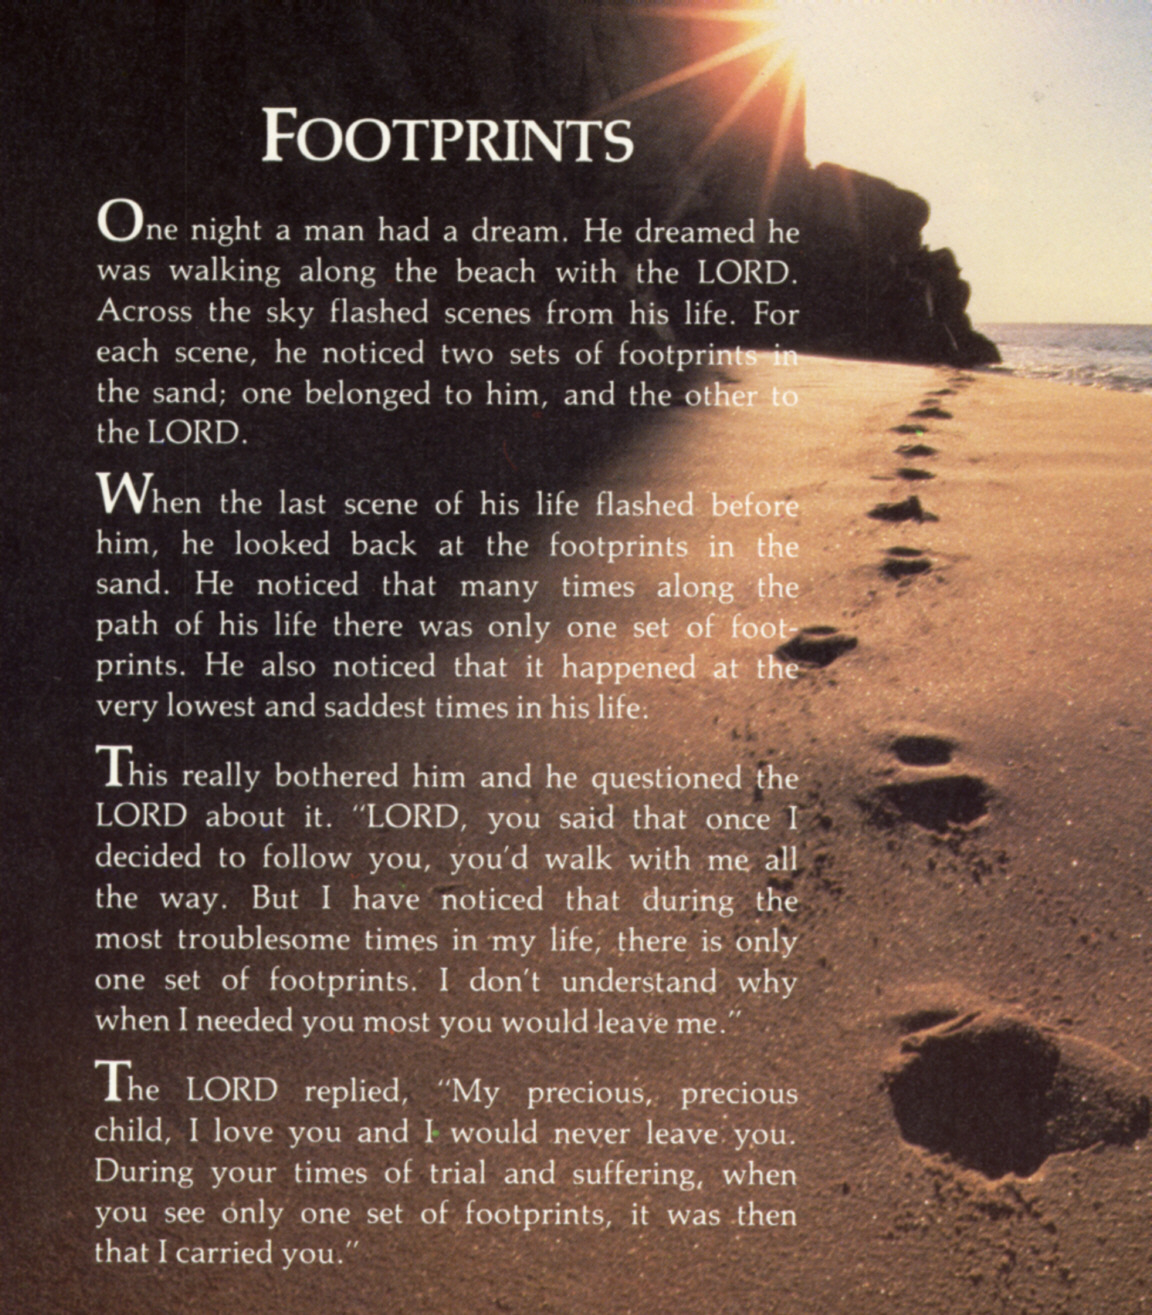 footprints-in-the-sand-footprints-in-the-sand-poem-biblical